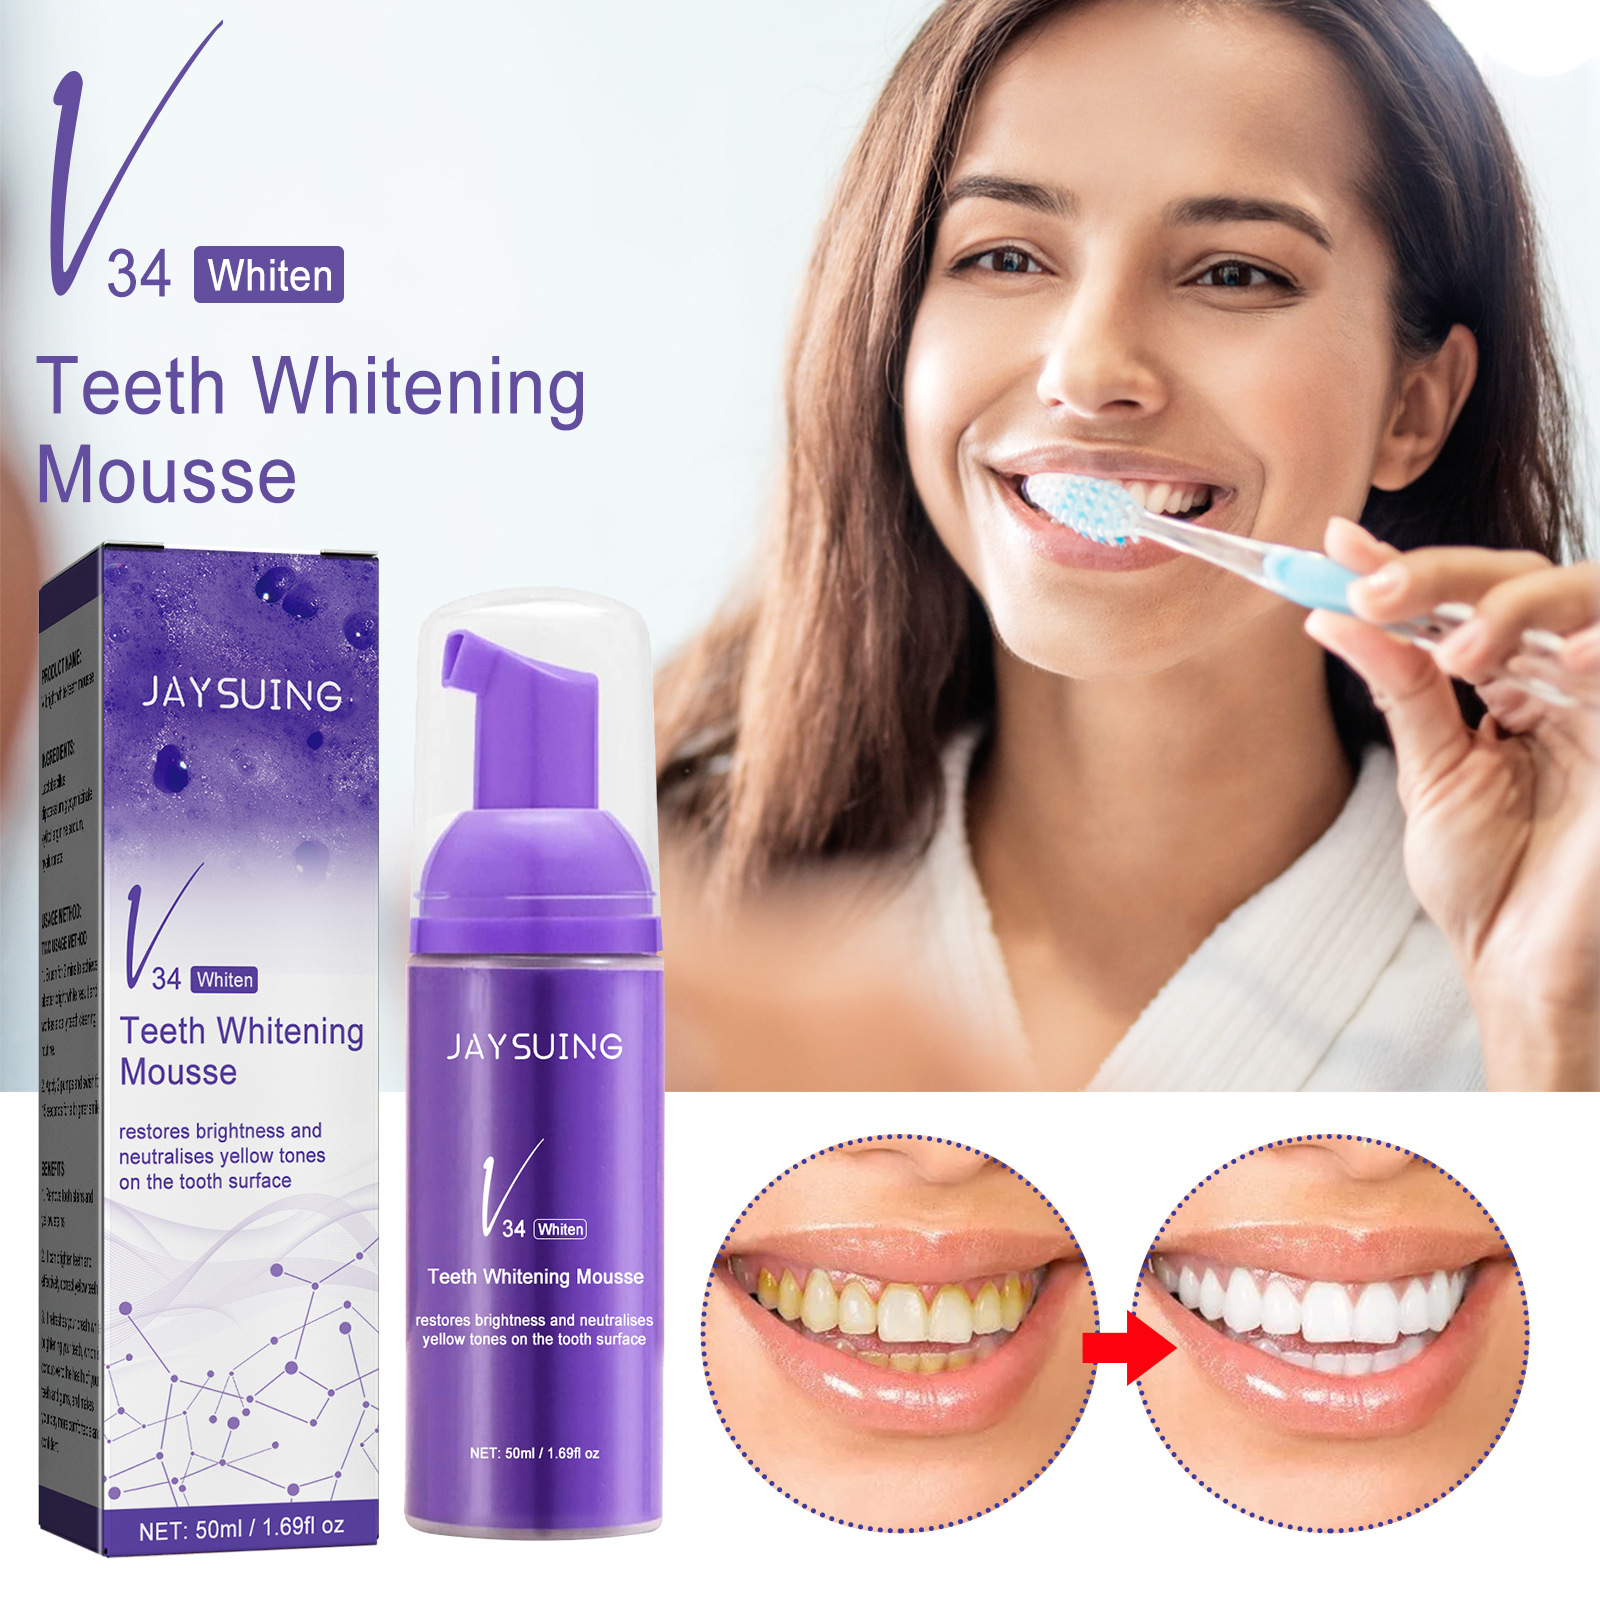 Serie V34 Mousse la pulizia dei denti Dentifricio sbiancante denti Denti puliti Dentifricio alito fresco Prodotto la pulizia dei denti bianchi